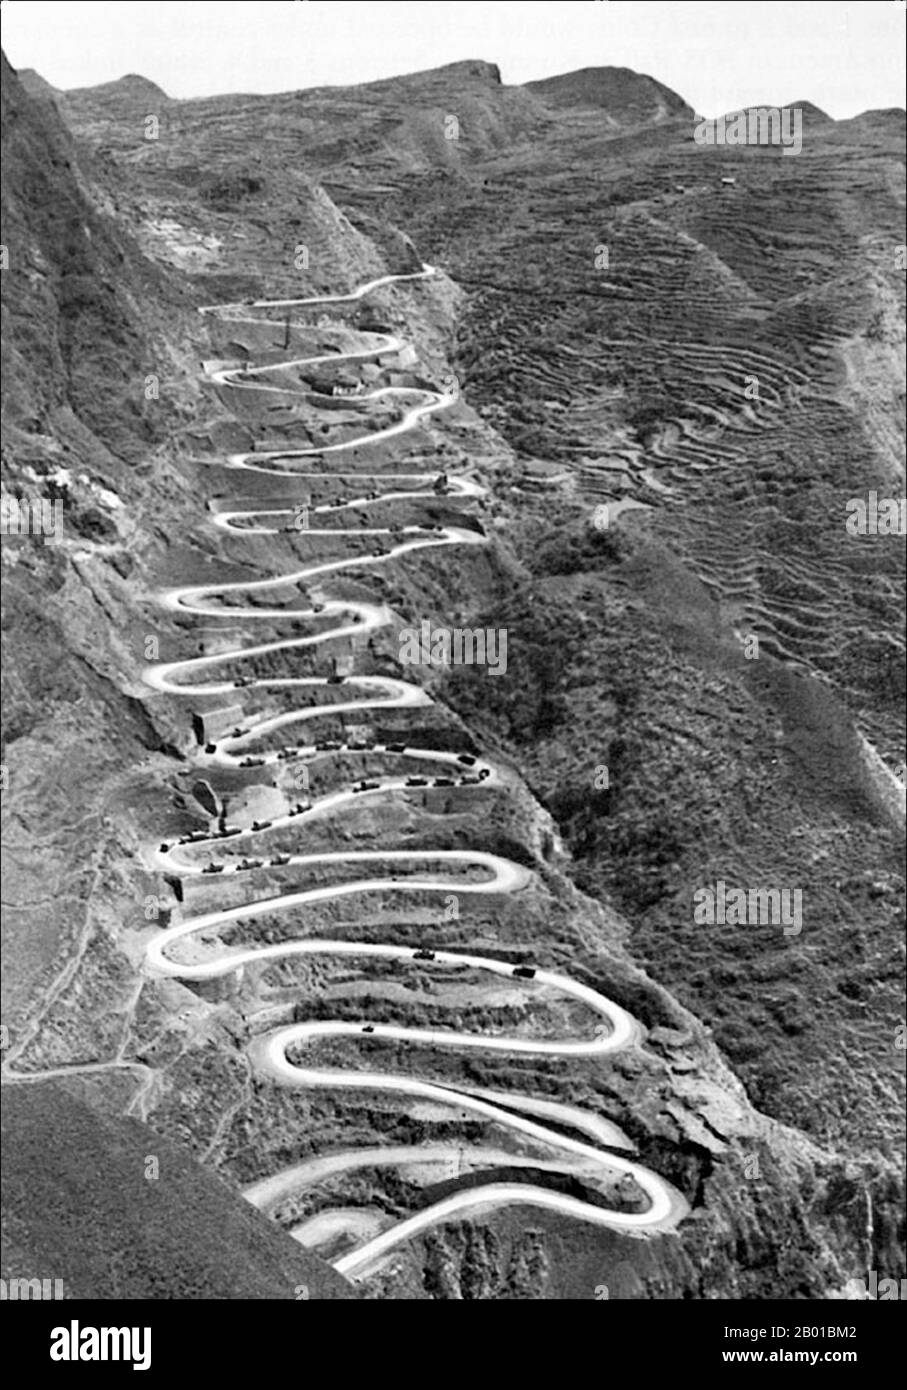 Birma/Myanmar/China: Ein Konvoi von Militärfahrzeugen auf einem Abschnitt der Burma Road, c. 1945. Die Burma Road ist eine Straße, die Burma (auch Myanmar genannt) mit China verbindet. Seine Terminals sind Kunming, Yunnan und Lashio, Burma. Als es gebaut wurde, war Burma eine britische Kolonie unter japanischer Besatzung. Die Straße ist 717 Meilen (1.154 km) lang und verläuft durch raues Bergland. Die Abschnitte von Kunming bis zur burmesischen Grenze wurden von 200.000 chinesischen Arbeitern während des Zweiten Chinesisch-Japanischen Krieges 1937 gebaut und bis 1938 fertiggestellt. Sie hatte eine Rolle im Zweiten Weltkrieg, als die Briten die Burma Road nutzten. Stockfoto